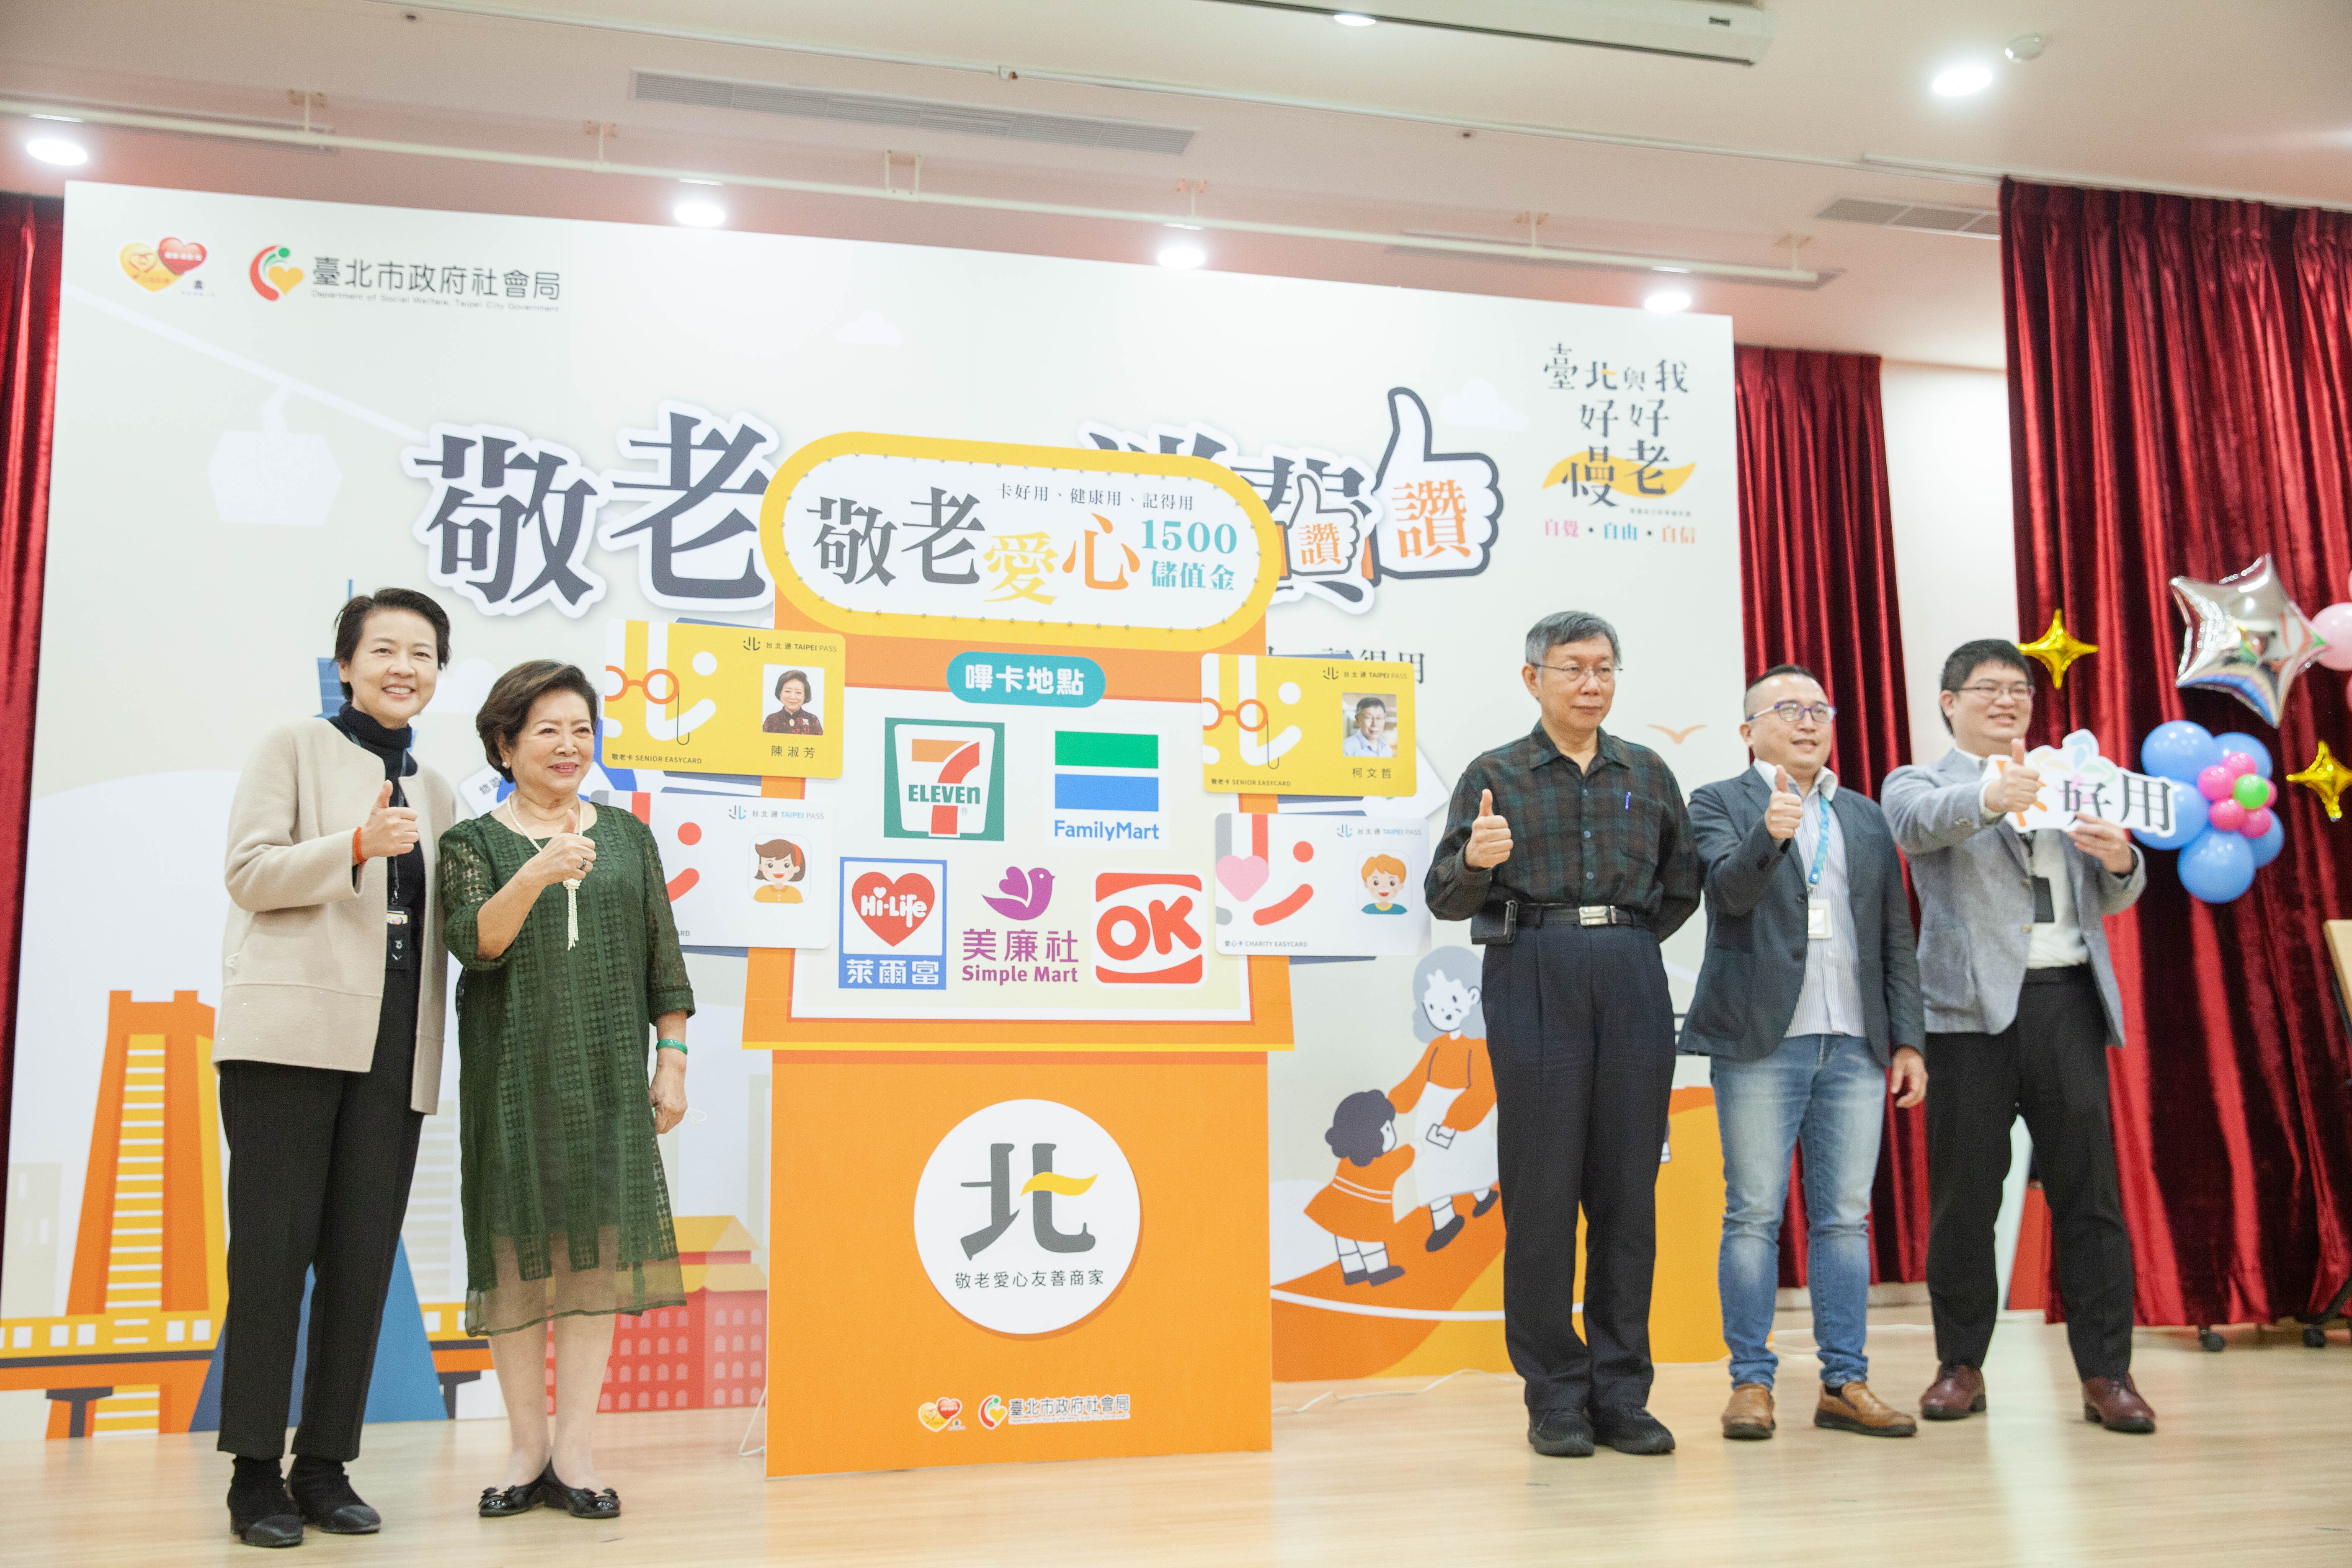 Dana senilai NT$1500 akan ditambahkan ke EasyCard senior secara gratis untuk pemilik kartu pemegang konsesi. (Foto / Disediakan oleh Pemerintah Kota Taipei)